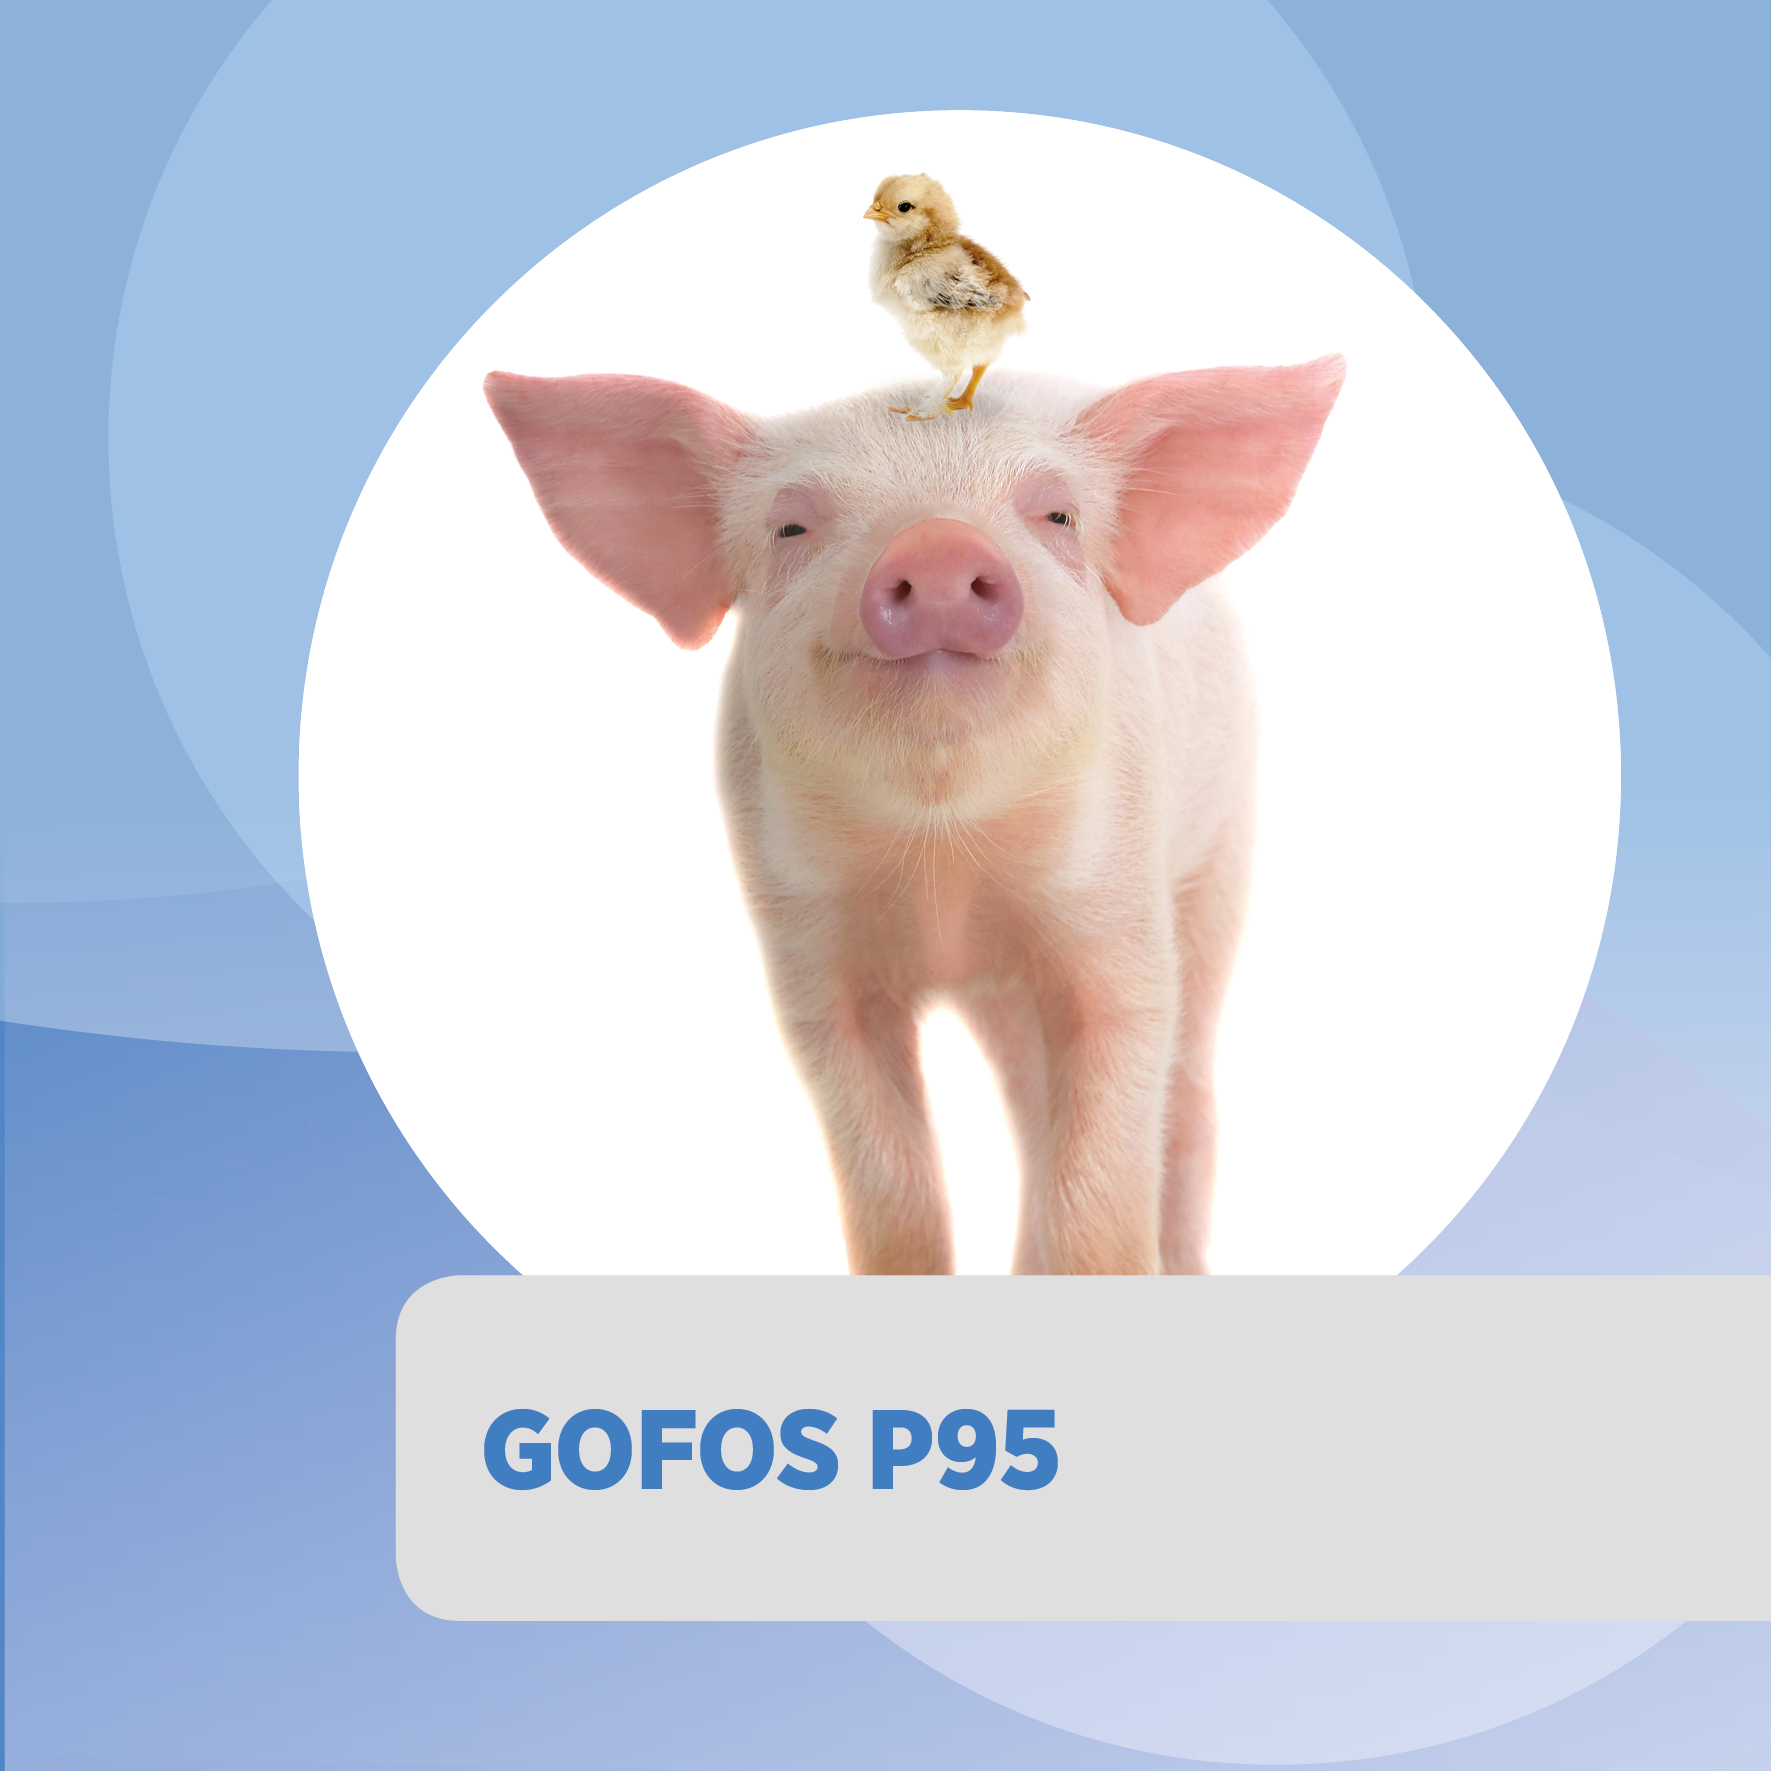 GOFOS P95